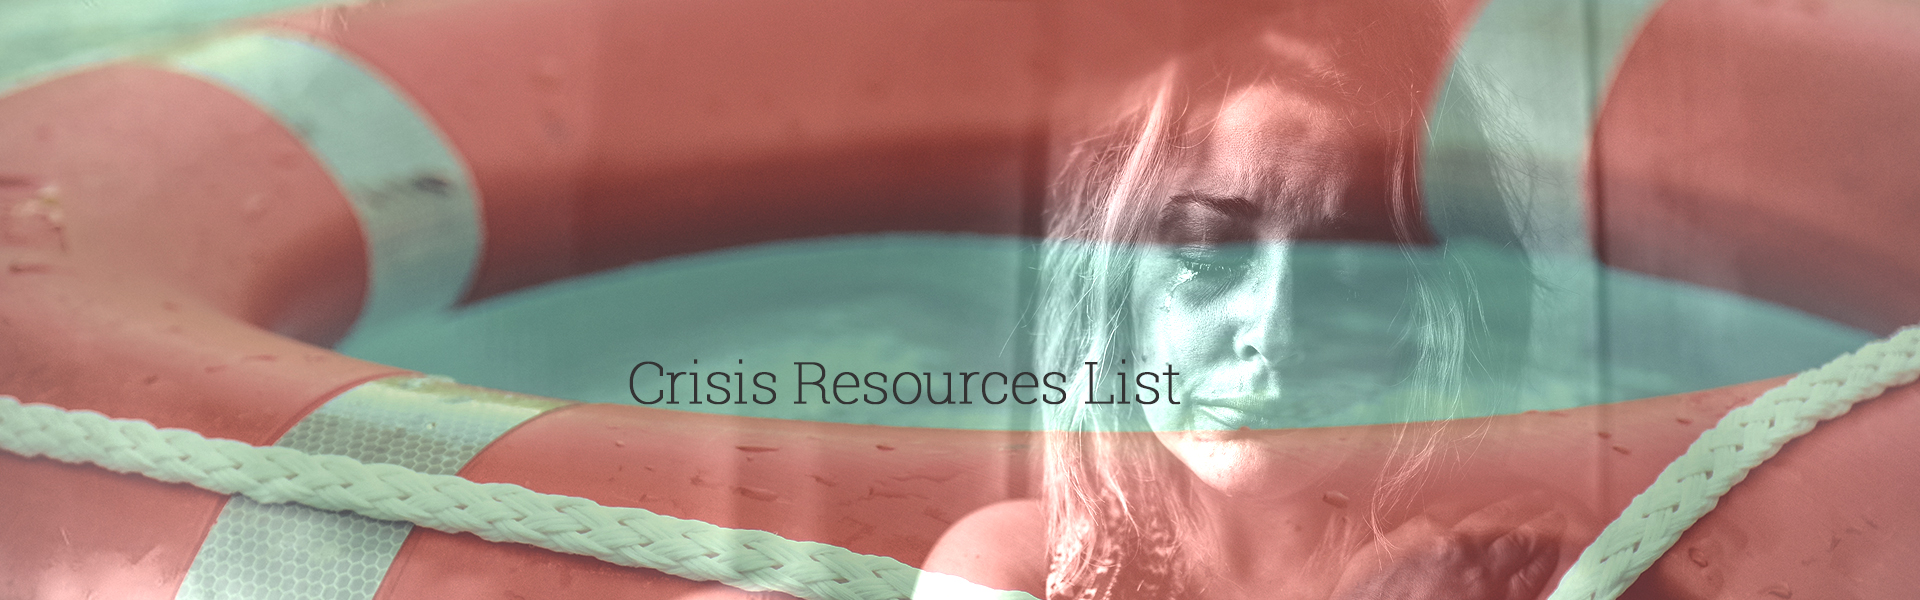 Crisis Resources List